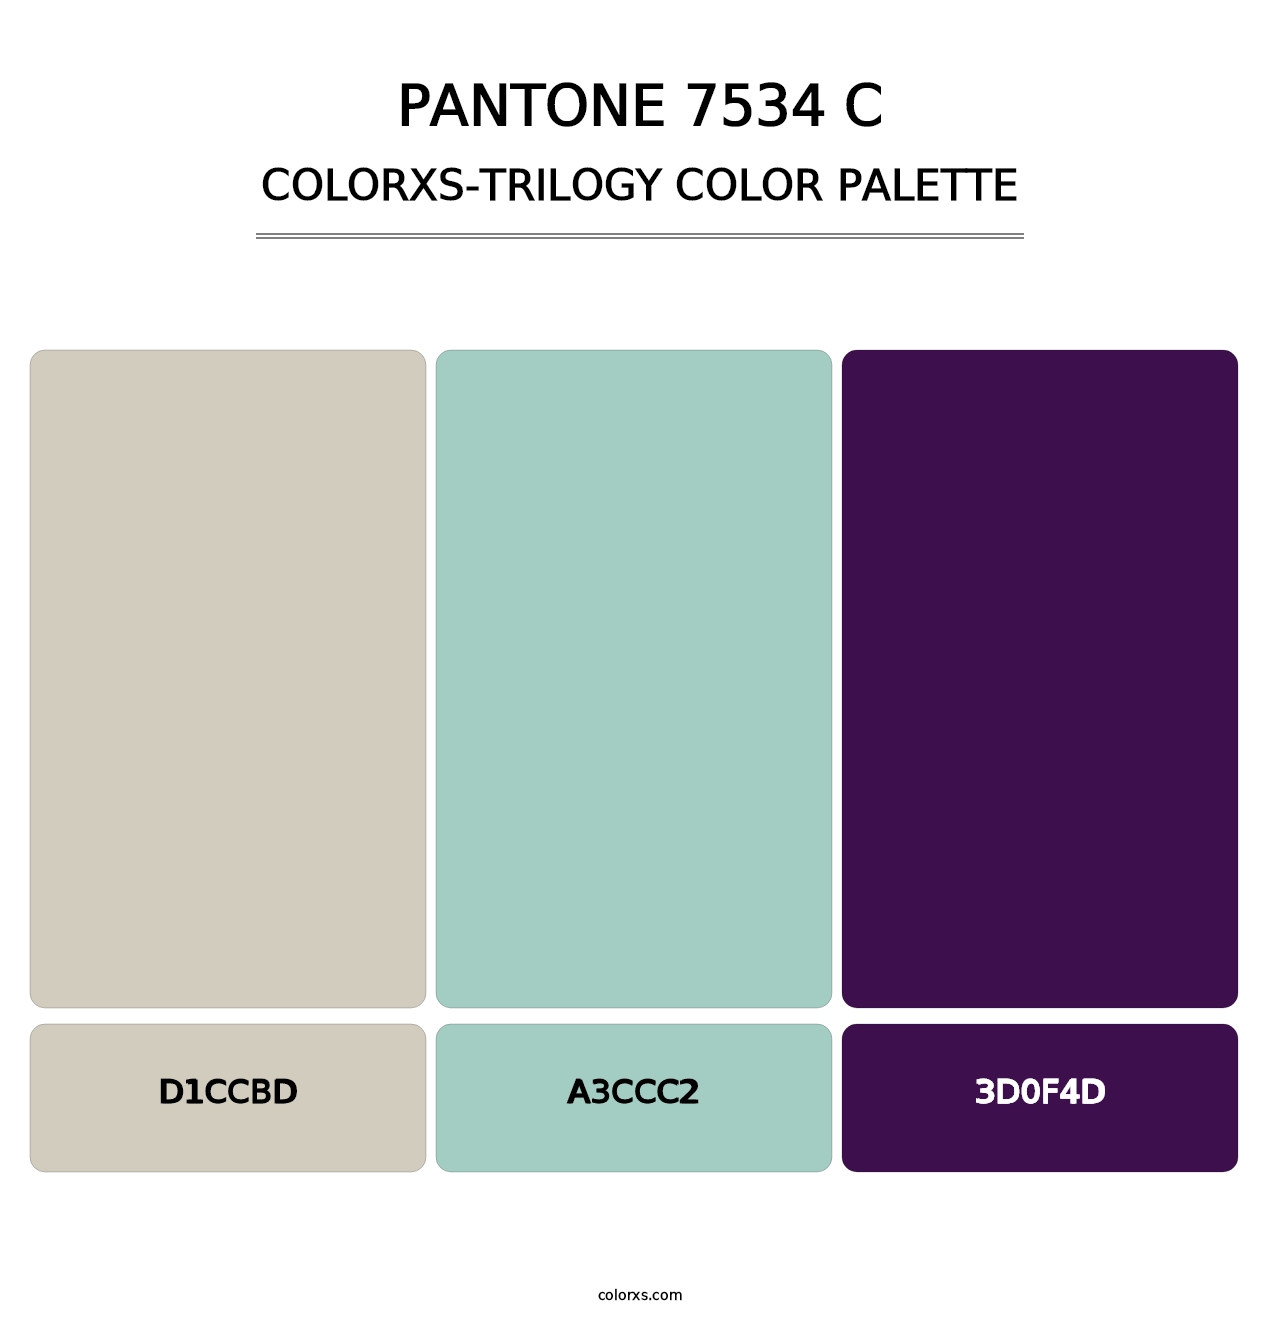 PANTONE 7534 C - Colorxs Trilogy Palette